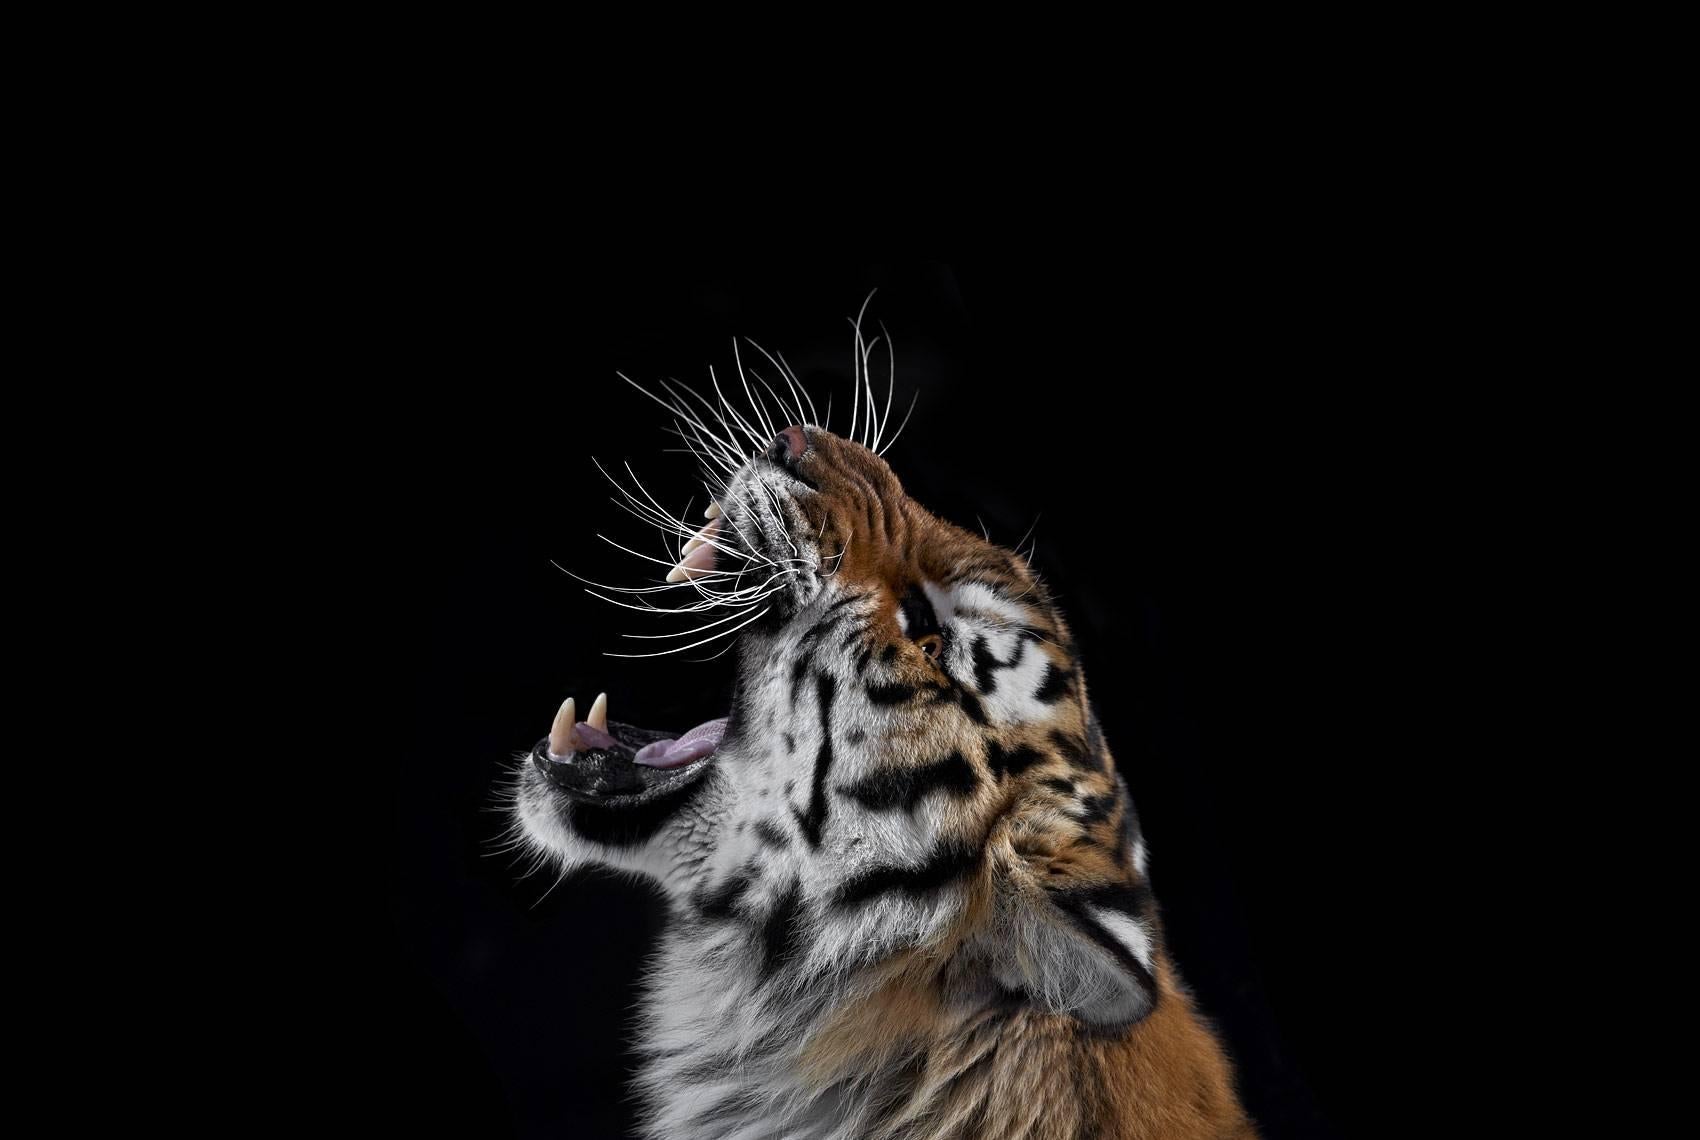 Tiger #3, Los Angeles, CA, 2010" ist eine limitierte Auflage einer Fotografie des zeitgenössischen Künstlers Brad Wilson aus der Serie "Affinity", die Studioporträts von Wildtieren zeigt. 

Dieses Foto wird nur als ungerahmter Abzug verkauft. Es ist